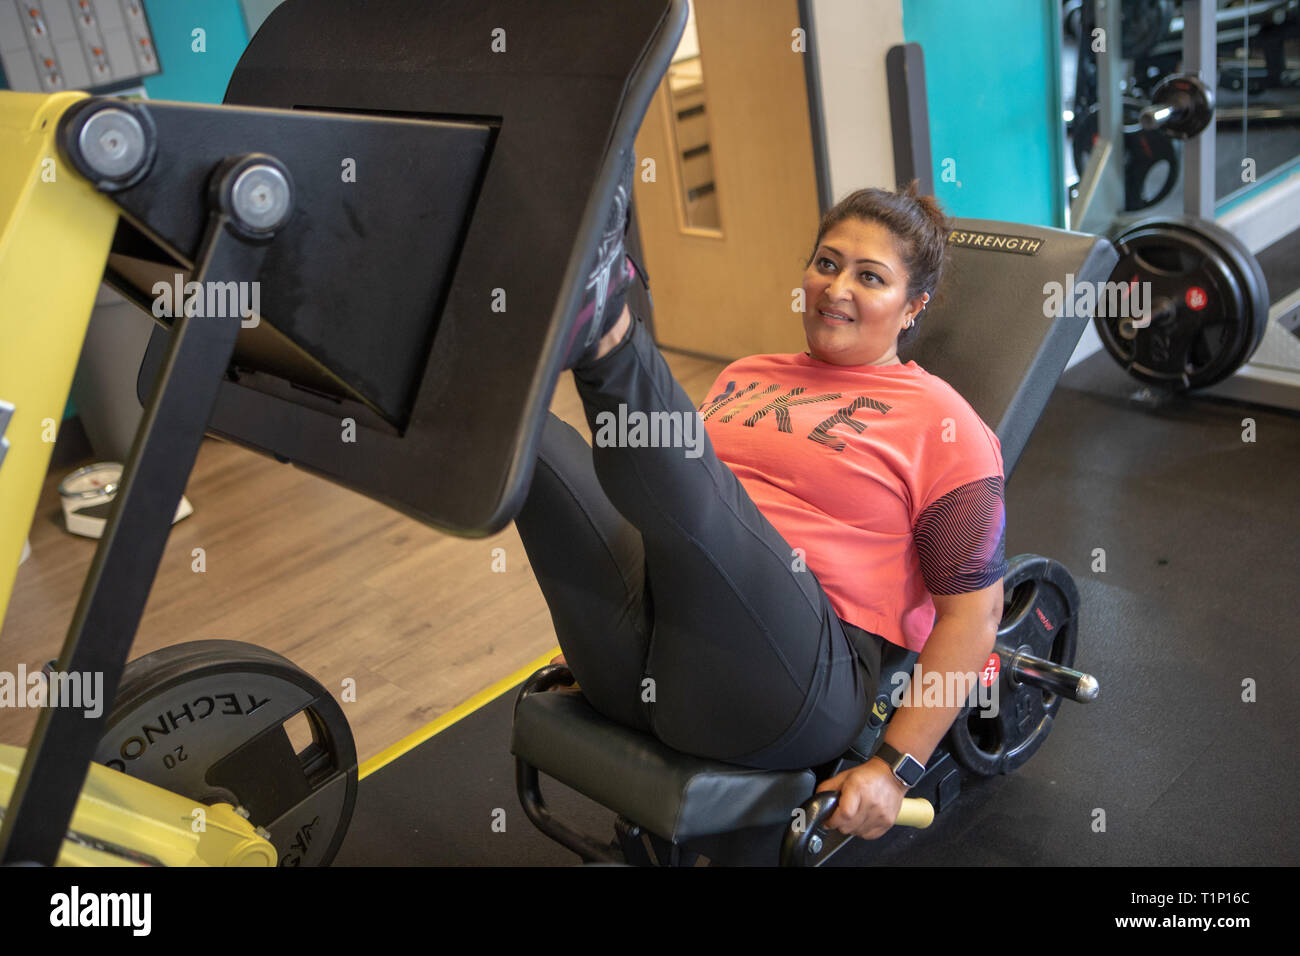 A woman uses a leg press machine at a gym UK Stock Photo ...